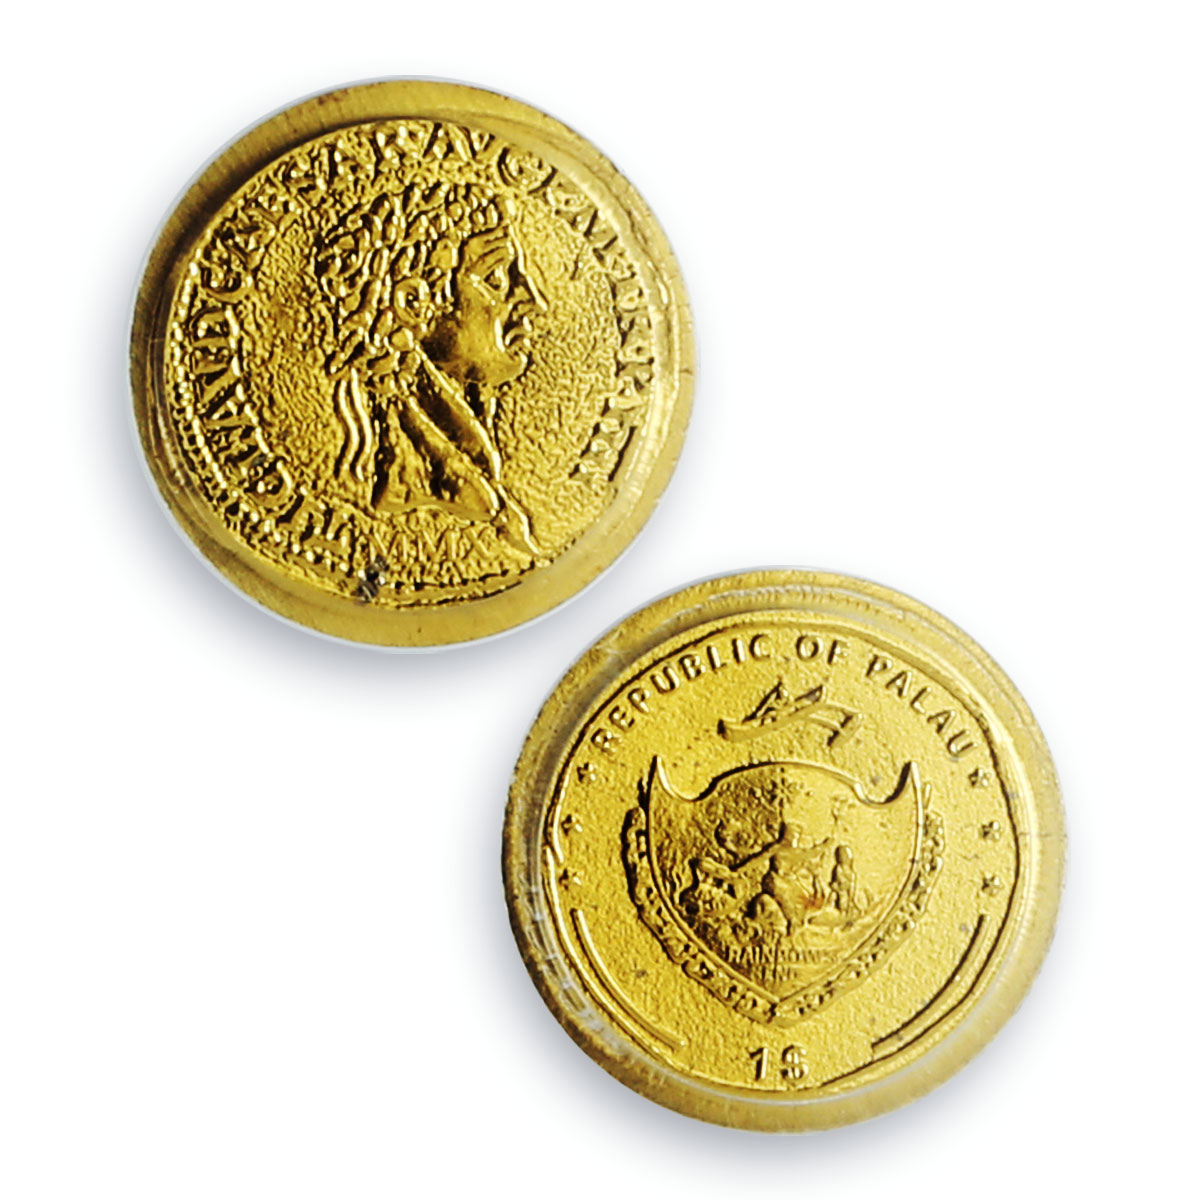 Palau 1 dollar Rome Empire Emperor Claudius Politics MS70 PCGS gold coin 2010